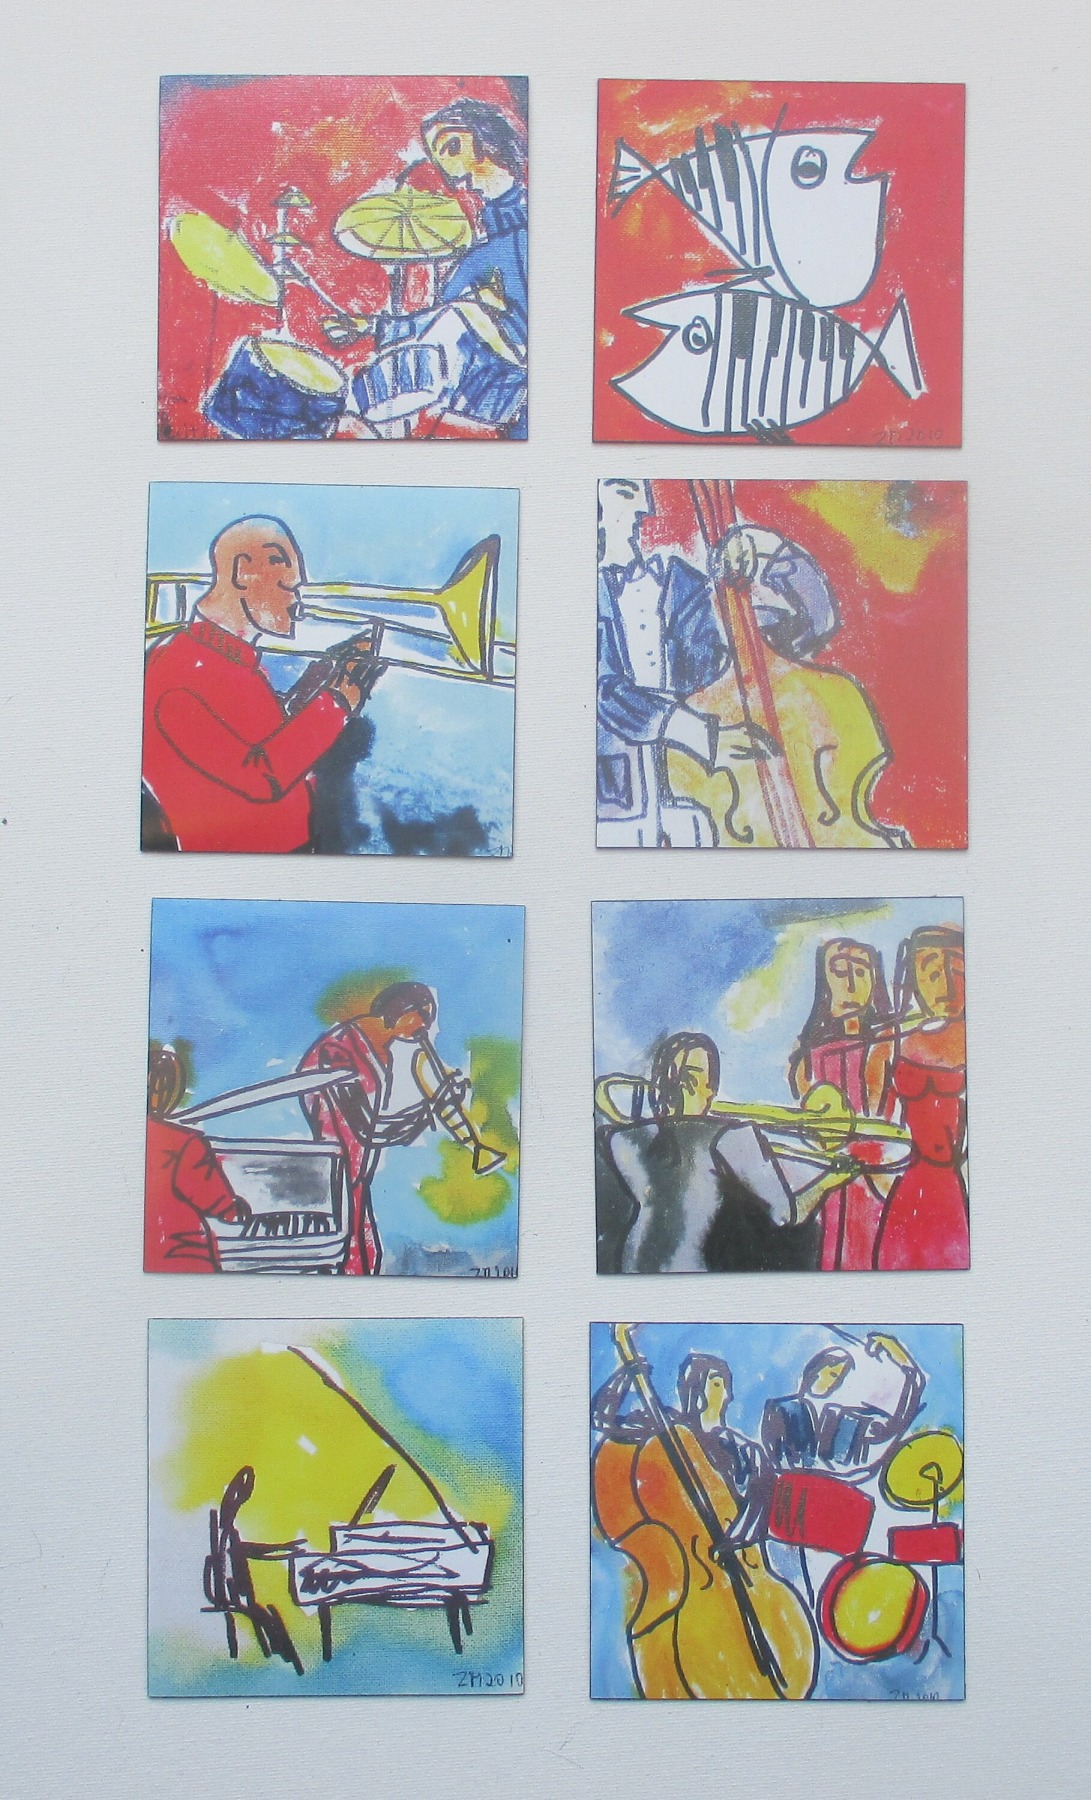 1 x Music-Szenen Trompete je 10x10 cm auf Magnet gedruckt - signiert/x/10 numeriert kostenloser